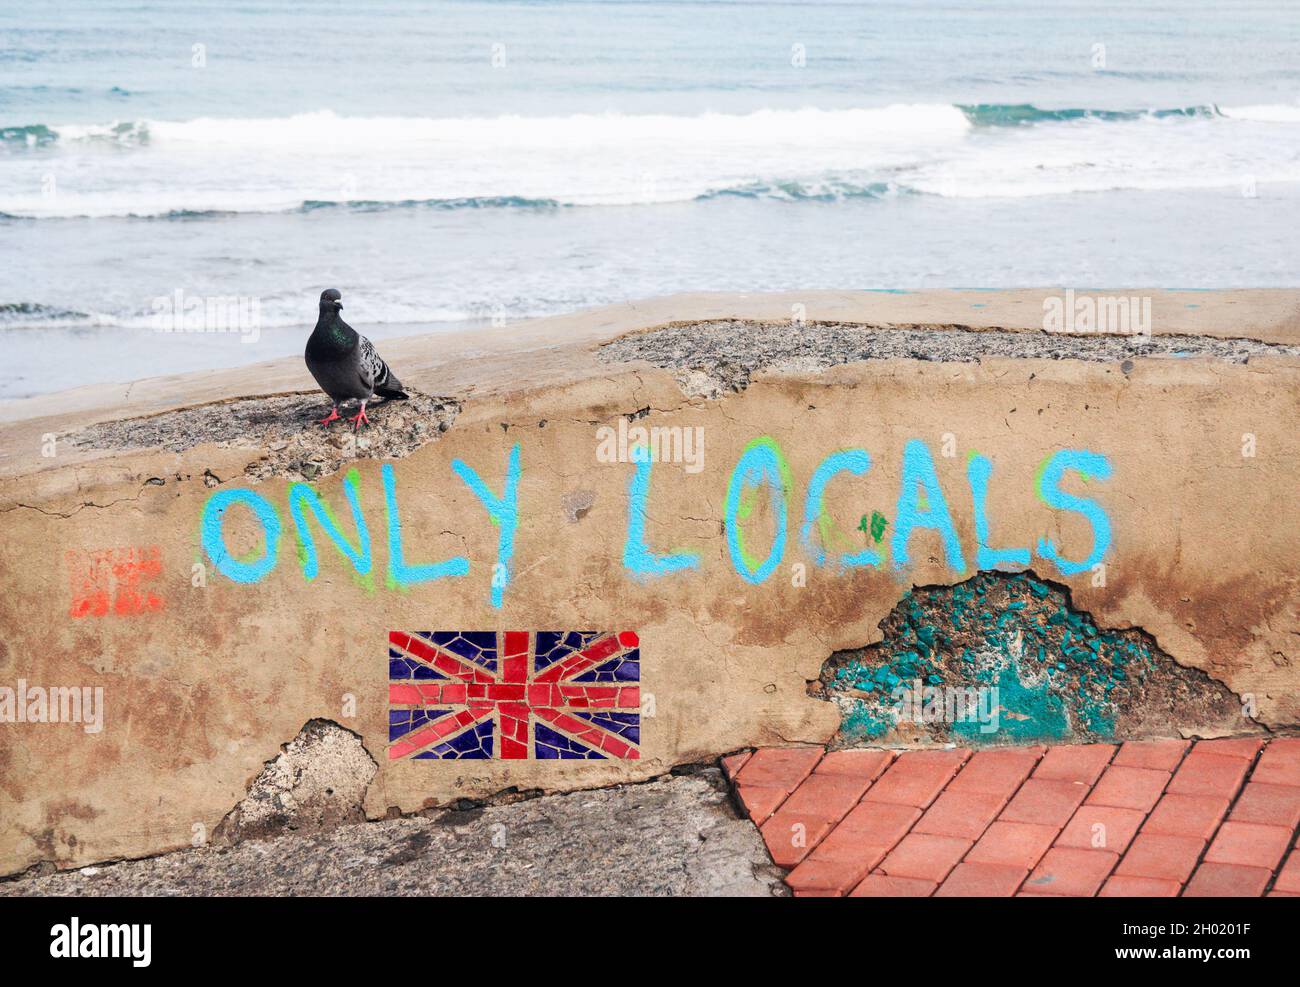 Seuls les locaux et le drapeau britannique Union Jack sont peints sur le mur de la mer.Brexit, immigration, Grande-Bretagne mondiale, contrôle des frontières, migrants en mer... Banque D'Images